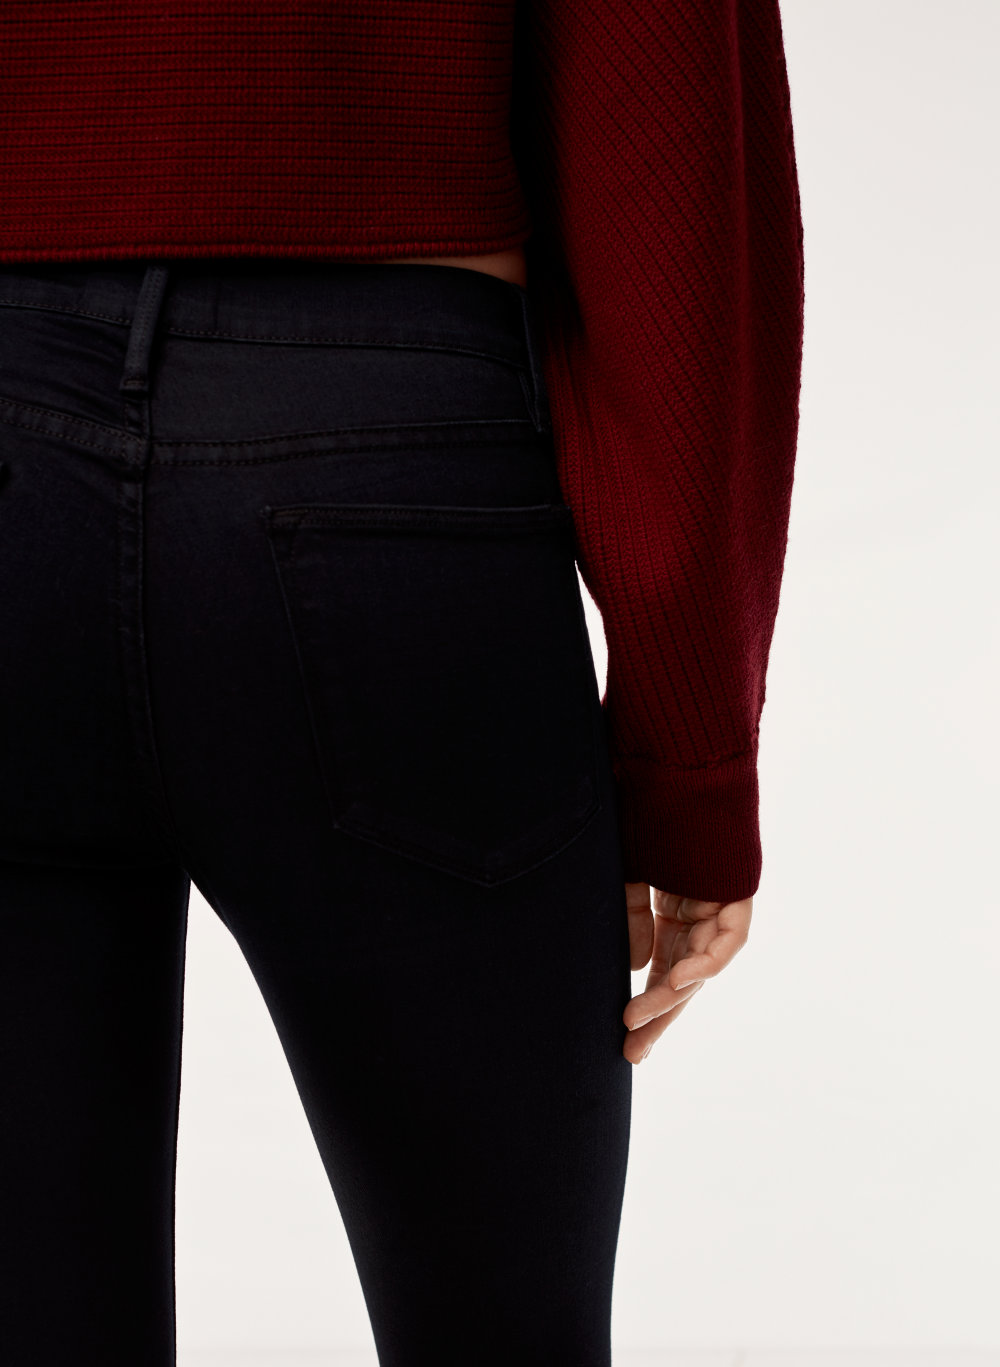 aritzia frame jeans